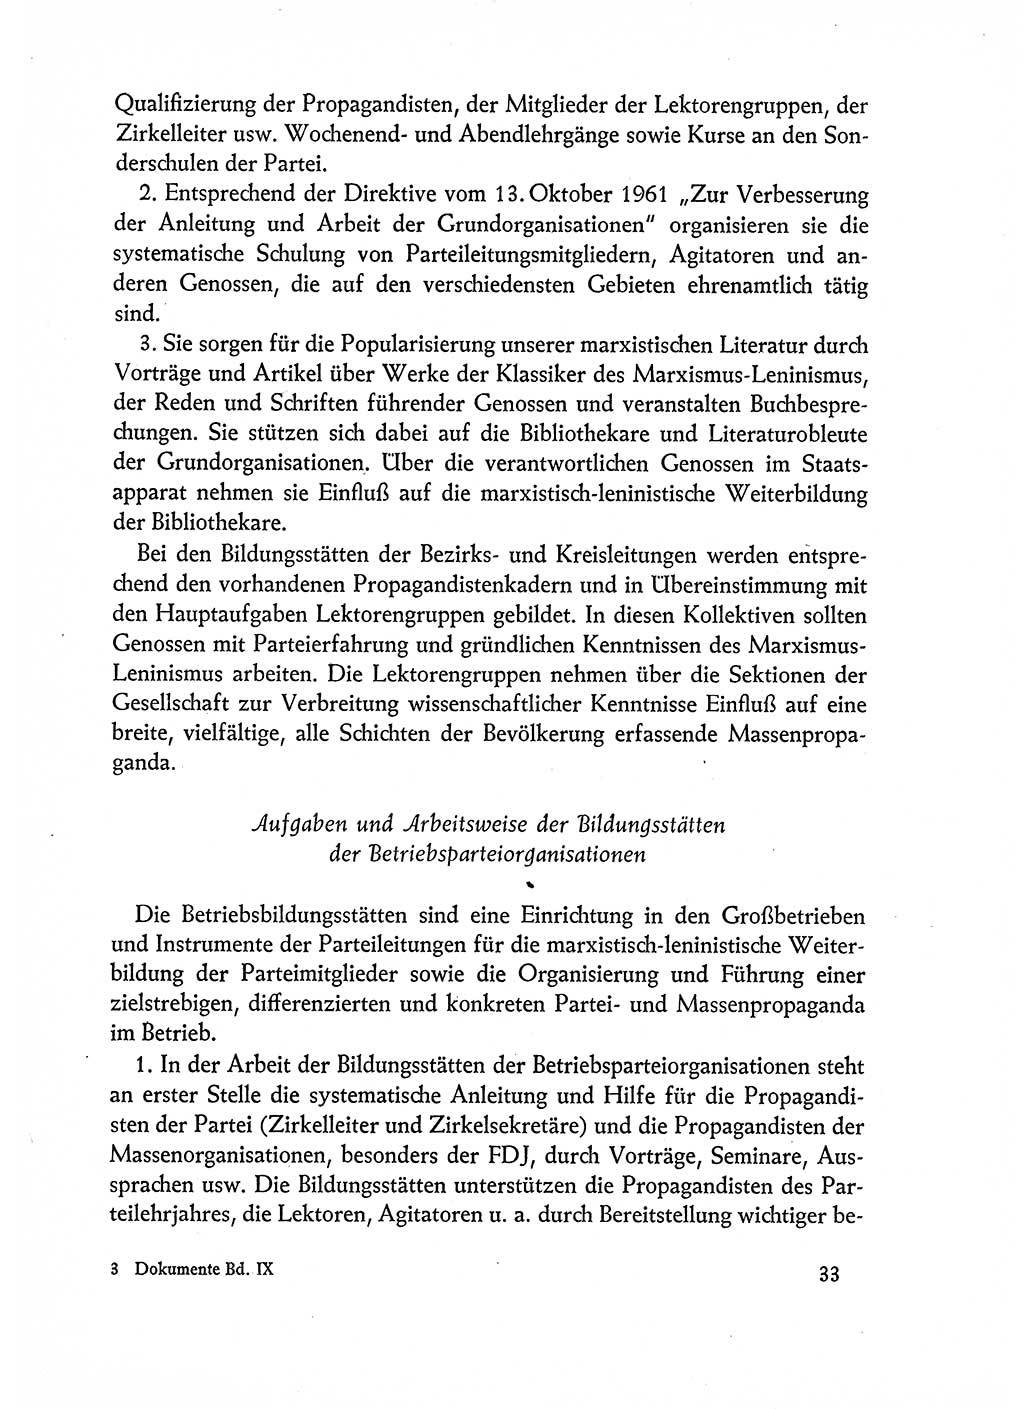 Dokumente der Sozialistischen Einheitspartei Deutschlands (SED) [Deutsche Demokratische Republik (DDR)] 1962-1963, Seite 33 (Dok. SED DDR 1962-1963, S. 33)